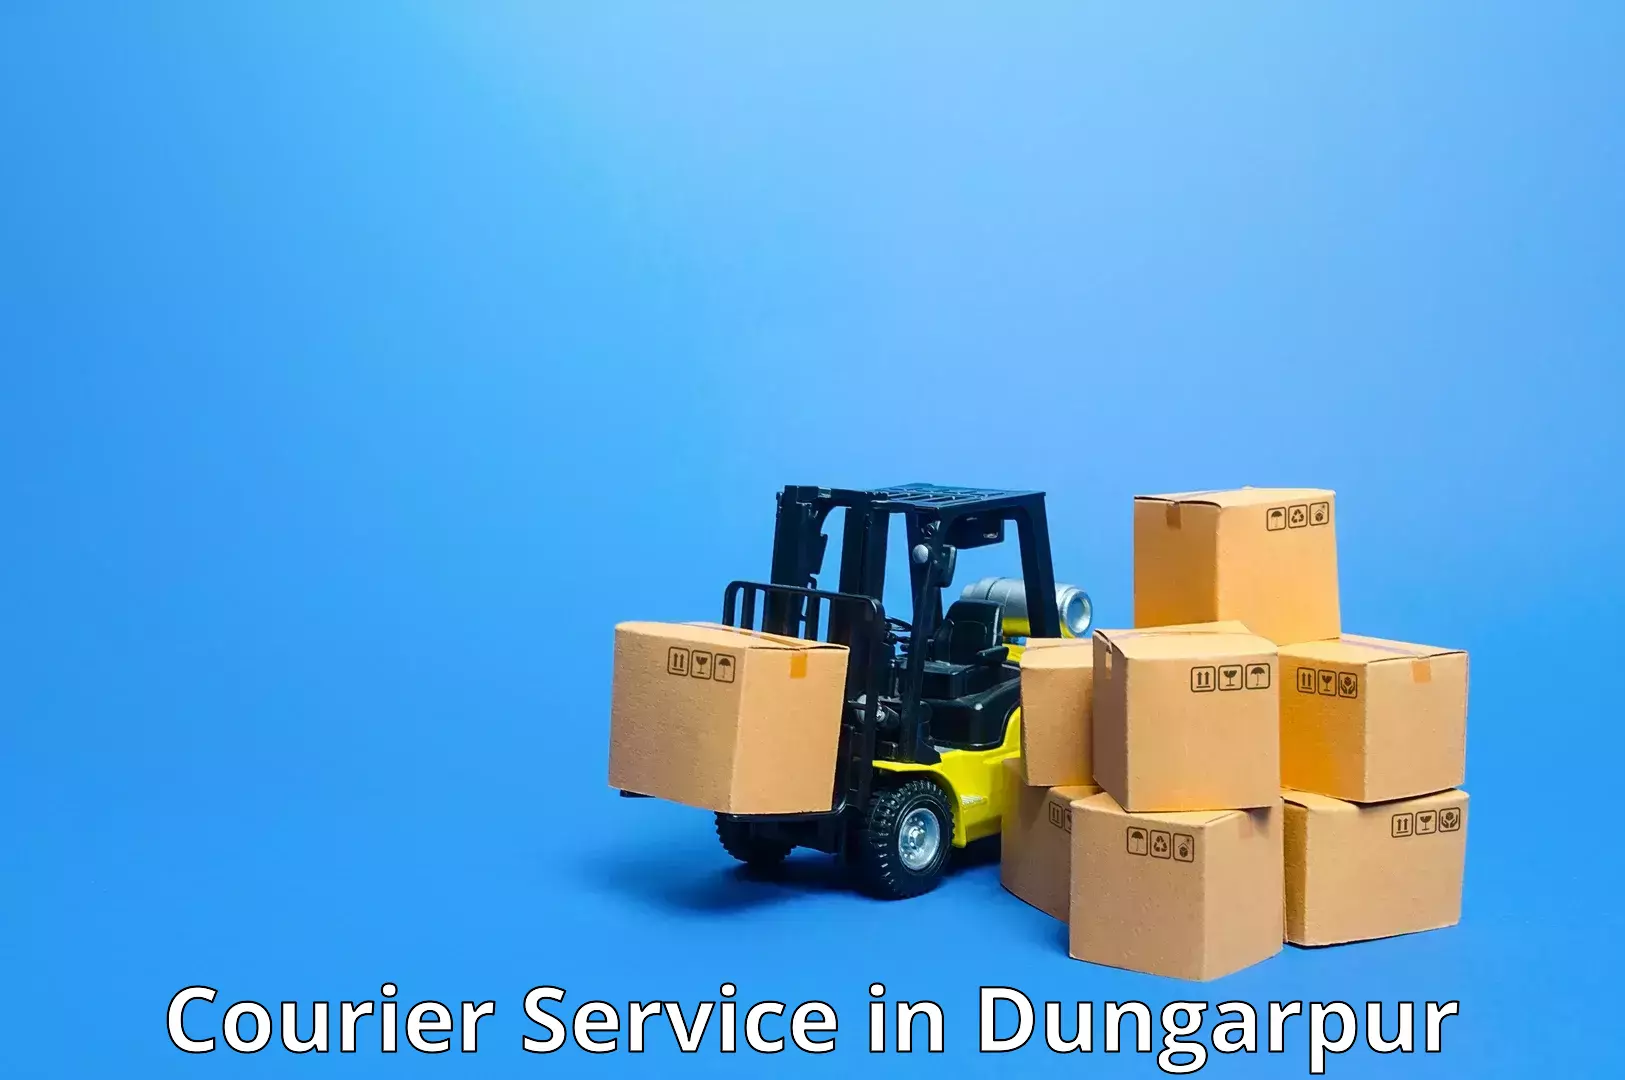 Premium courier solutions in Dungarpur